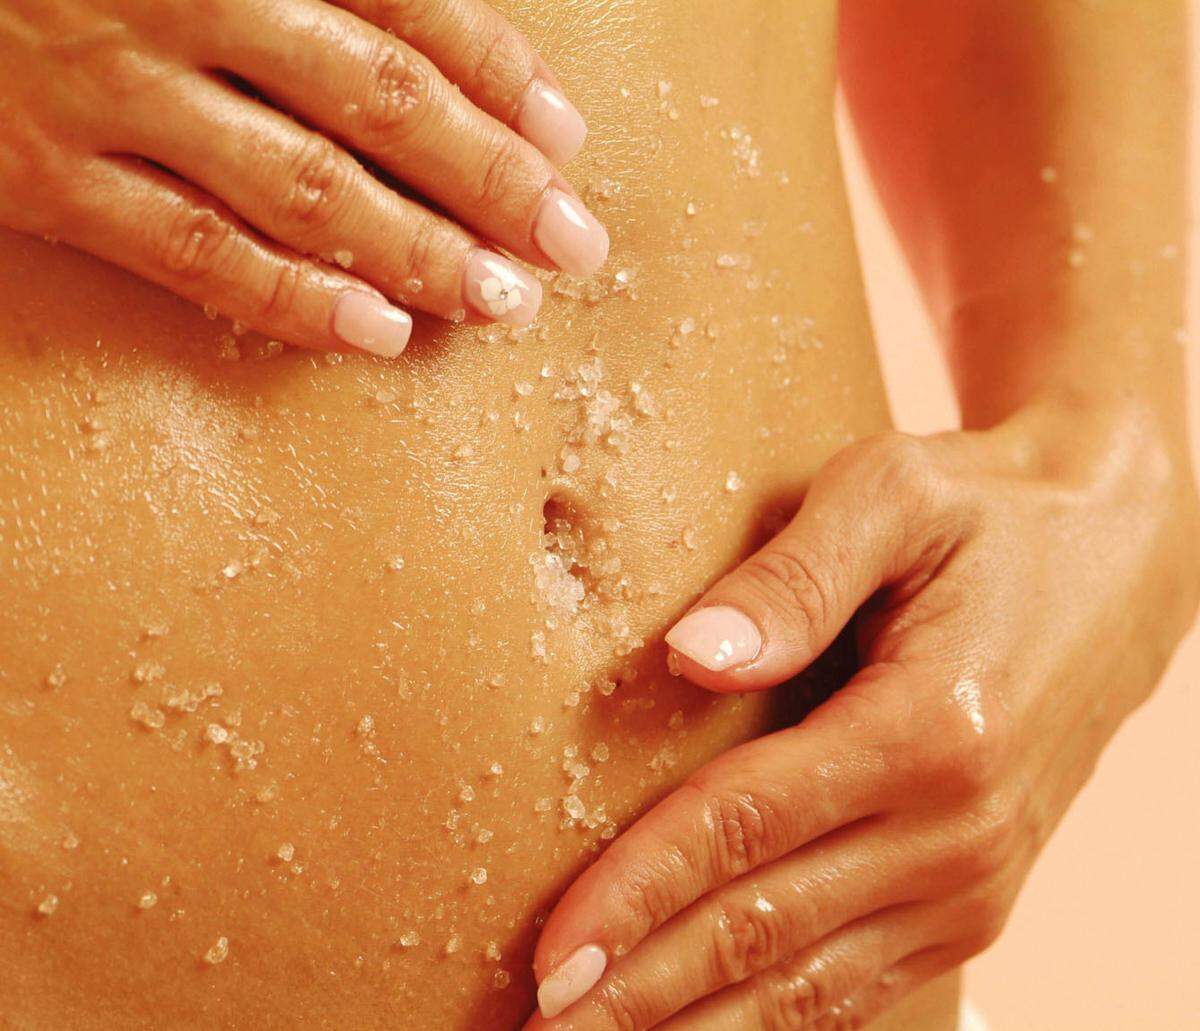 Trockener Haut lässt sich nicht nur durch ausreichend Feuchtigkeitspflege vorbeugen, sondern auch durch Peelings. Ein oder zweimal in der Woche lassen sich damit trockenen und abgestorbenen Hautschichten entfernen.